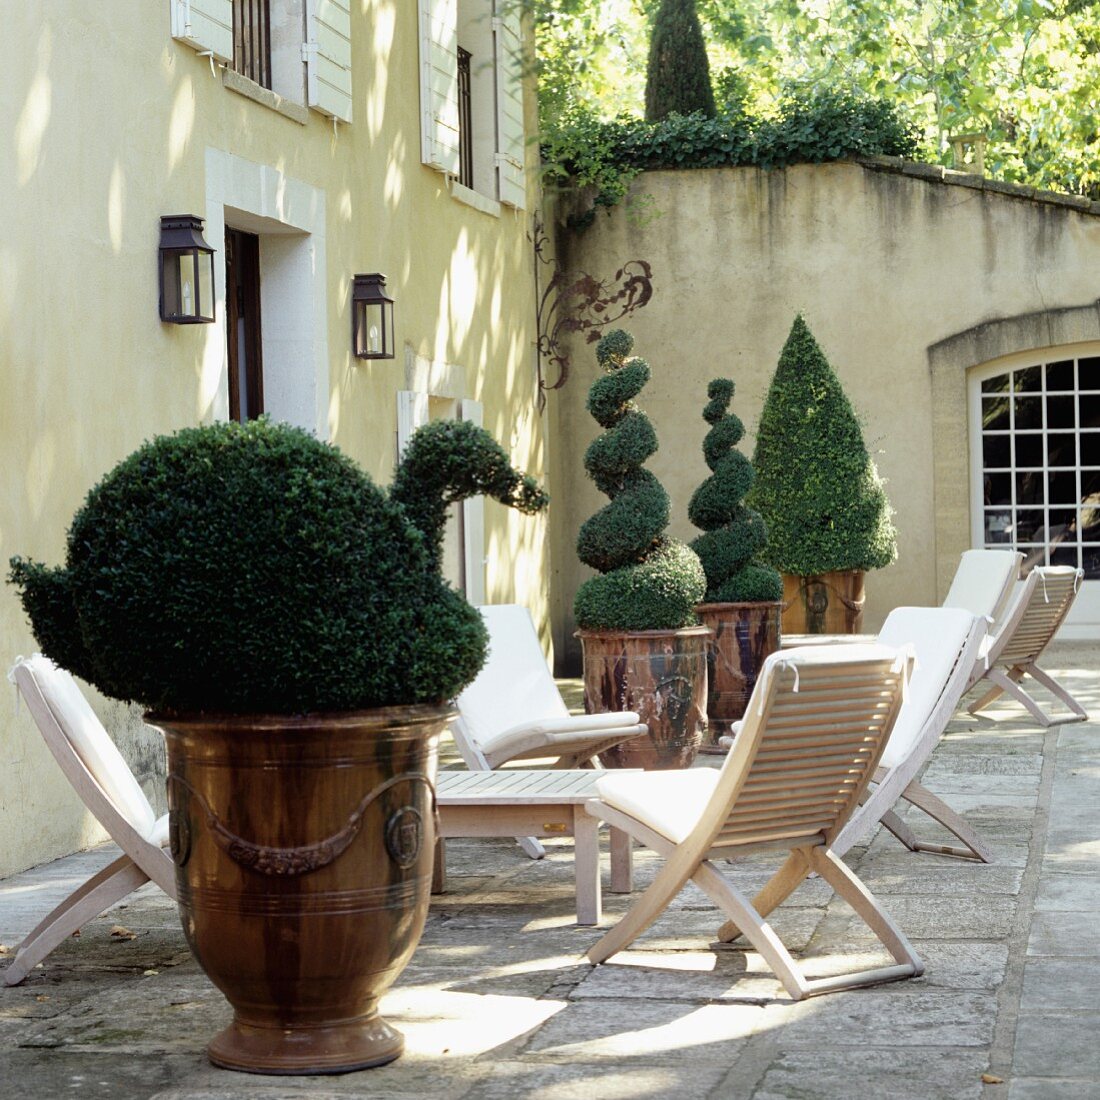 Fomgeschnittene Buchsbaumhecken in Pflanzengefässen aus Kupfer und Terrassenmöbel vor elegantem Landhaus